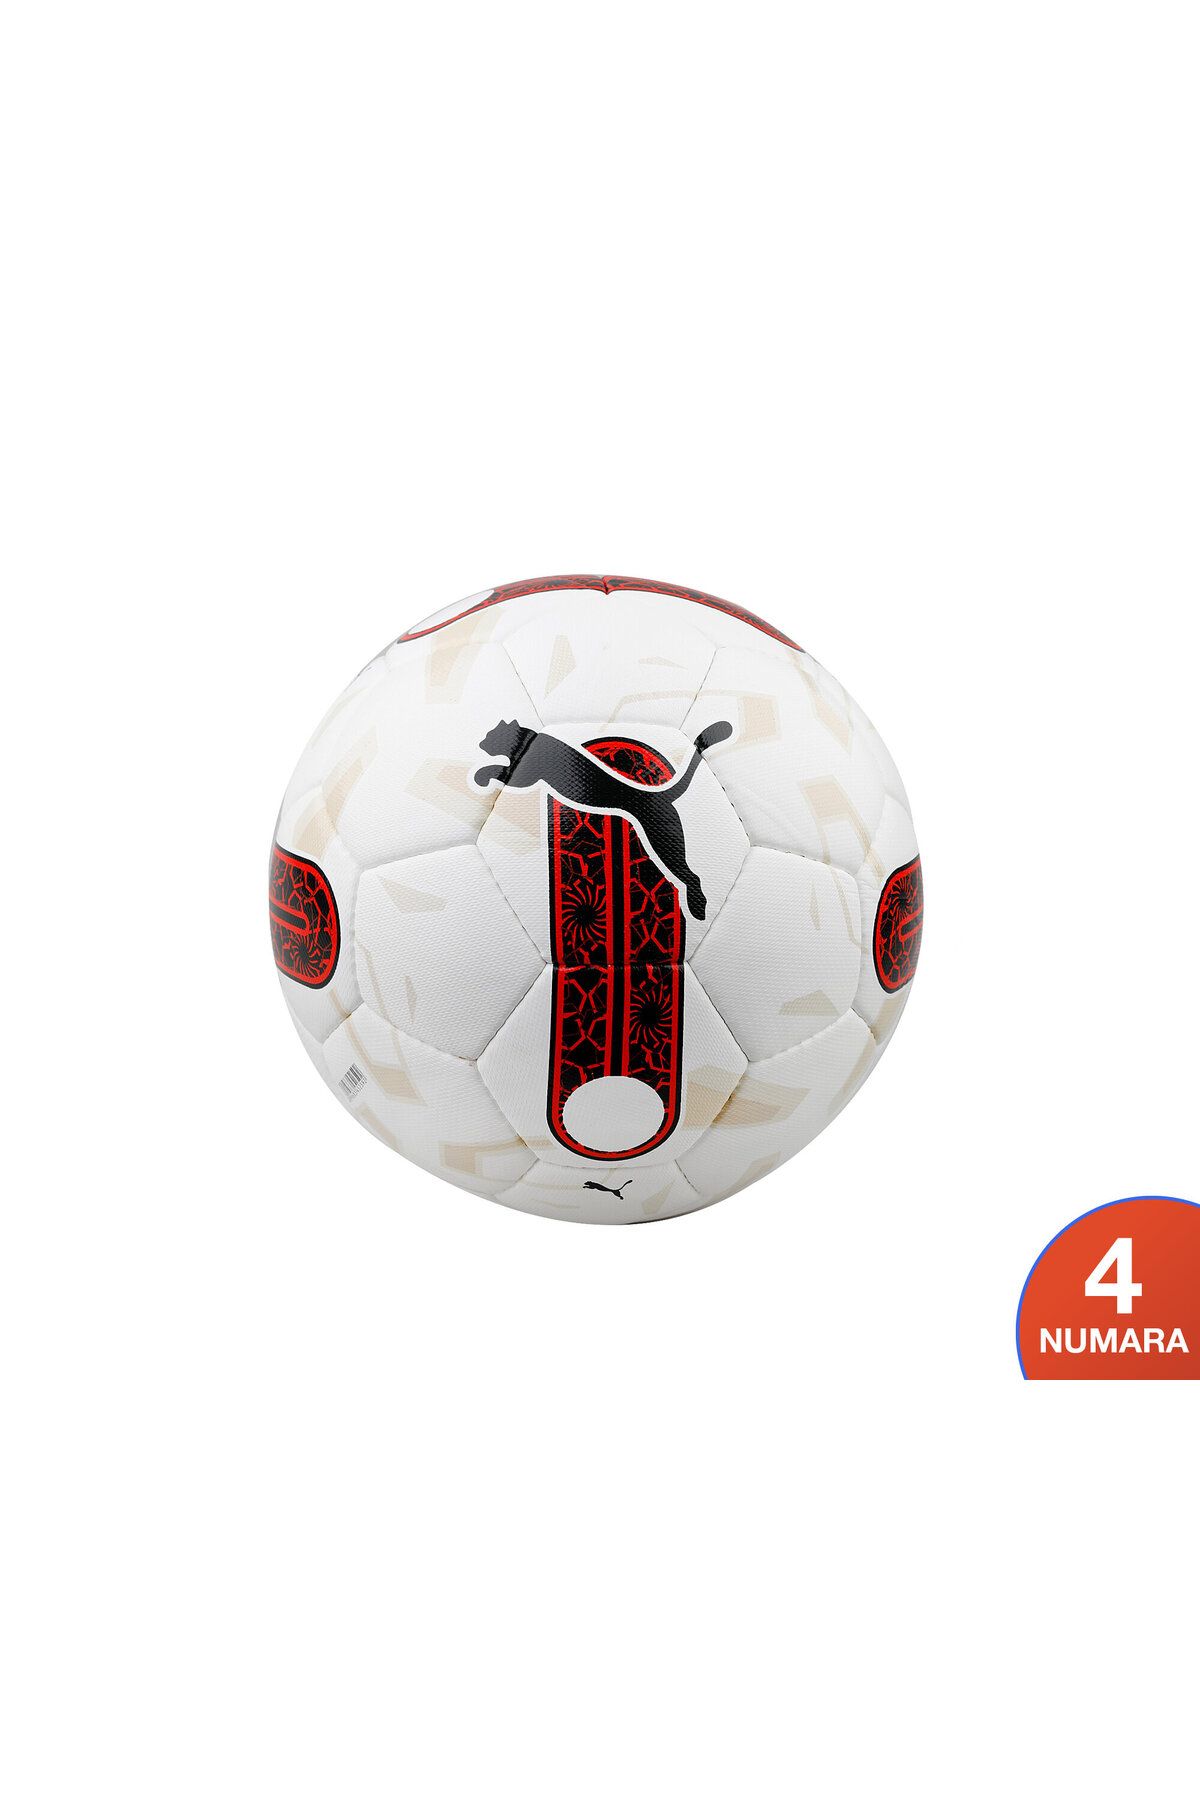 Puma Orbita Süper Lig 5 Hs Futbol Topu 08419701-4 Beyaz